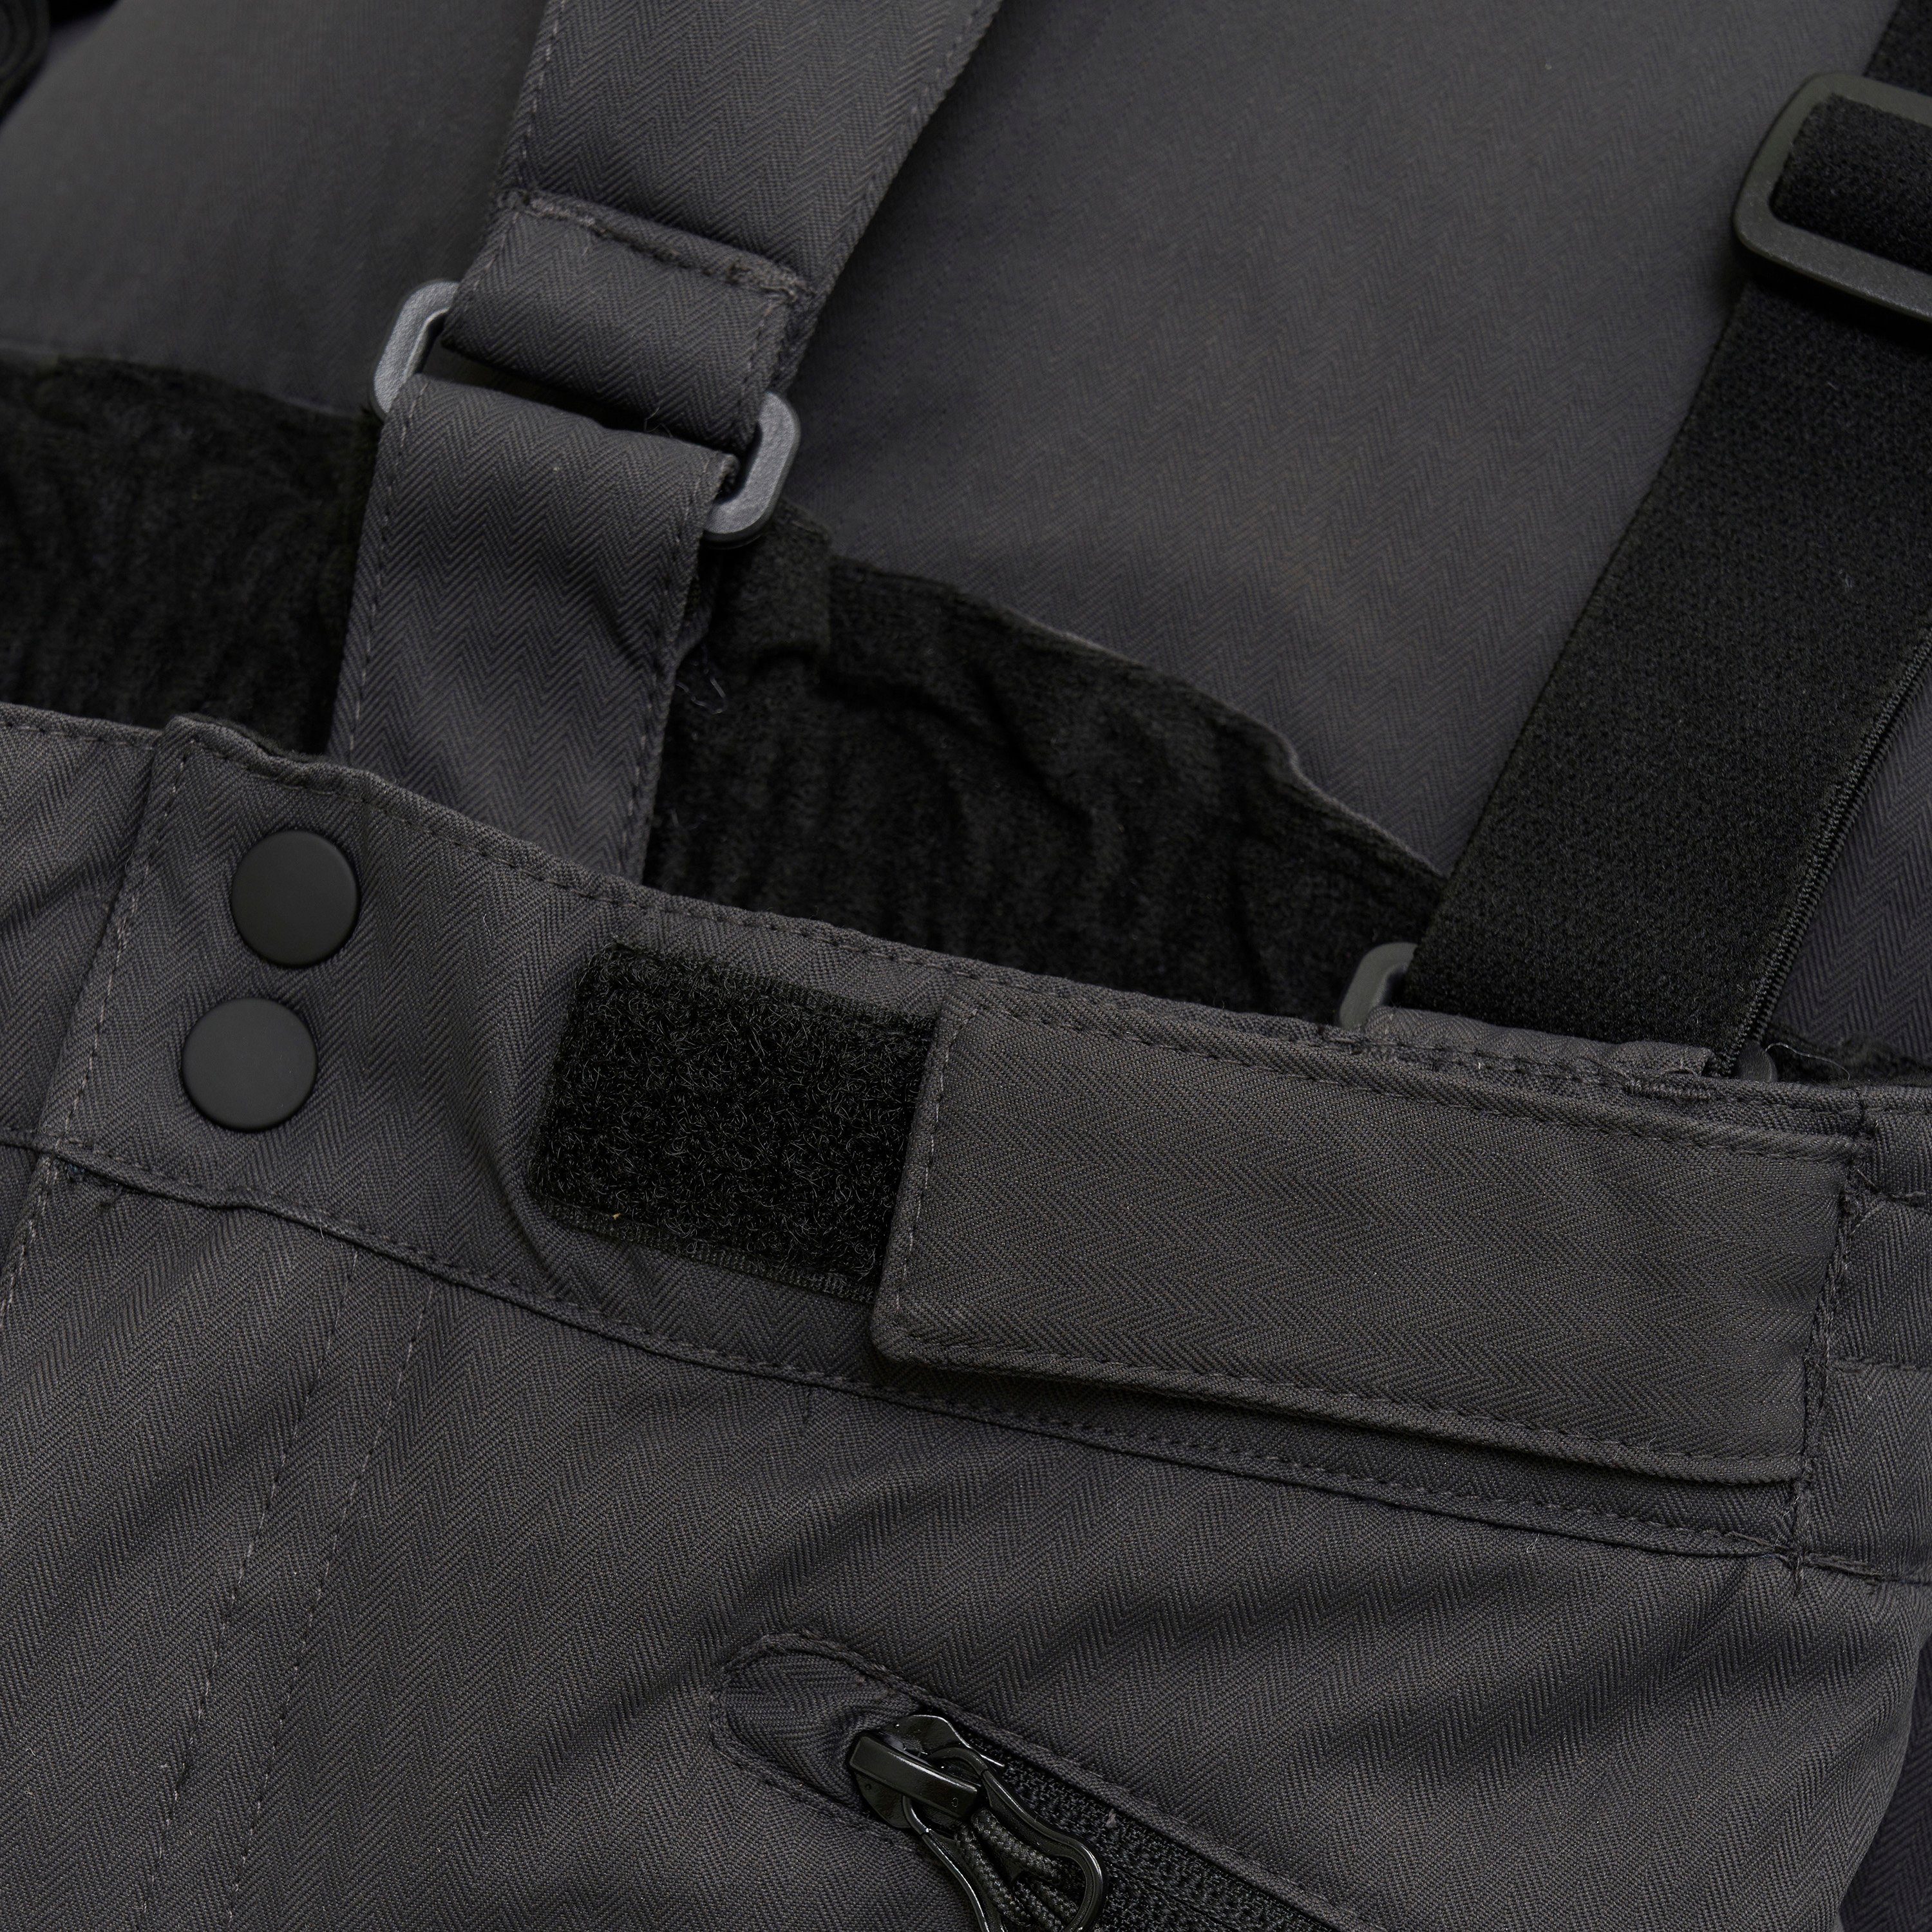 Pants Skihose COLOR - Reißverschlusstaschen mit COSki Matschhose (161) Phantom 5440 W.Pockets Regen- KIDS und